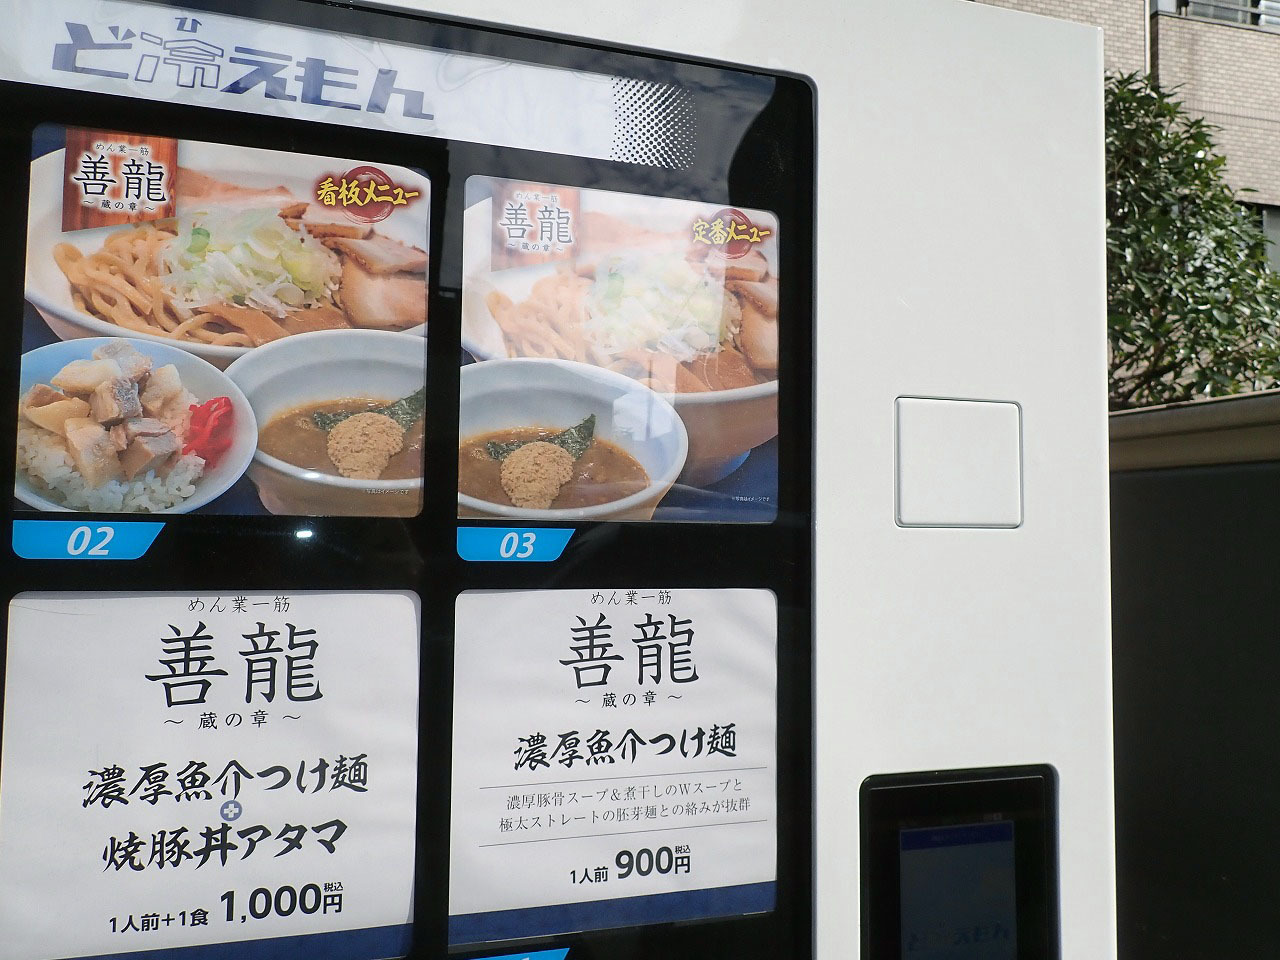 「濃厚魚介つけ麺」は900円です